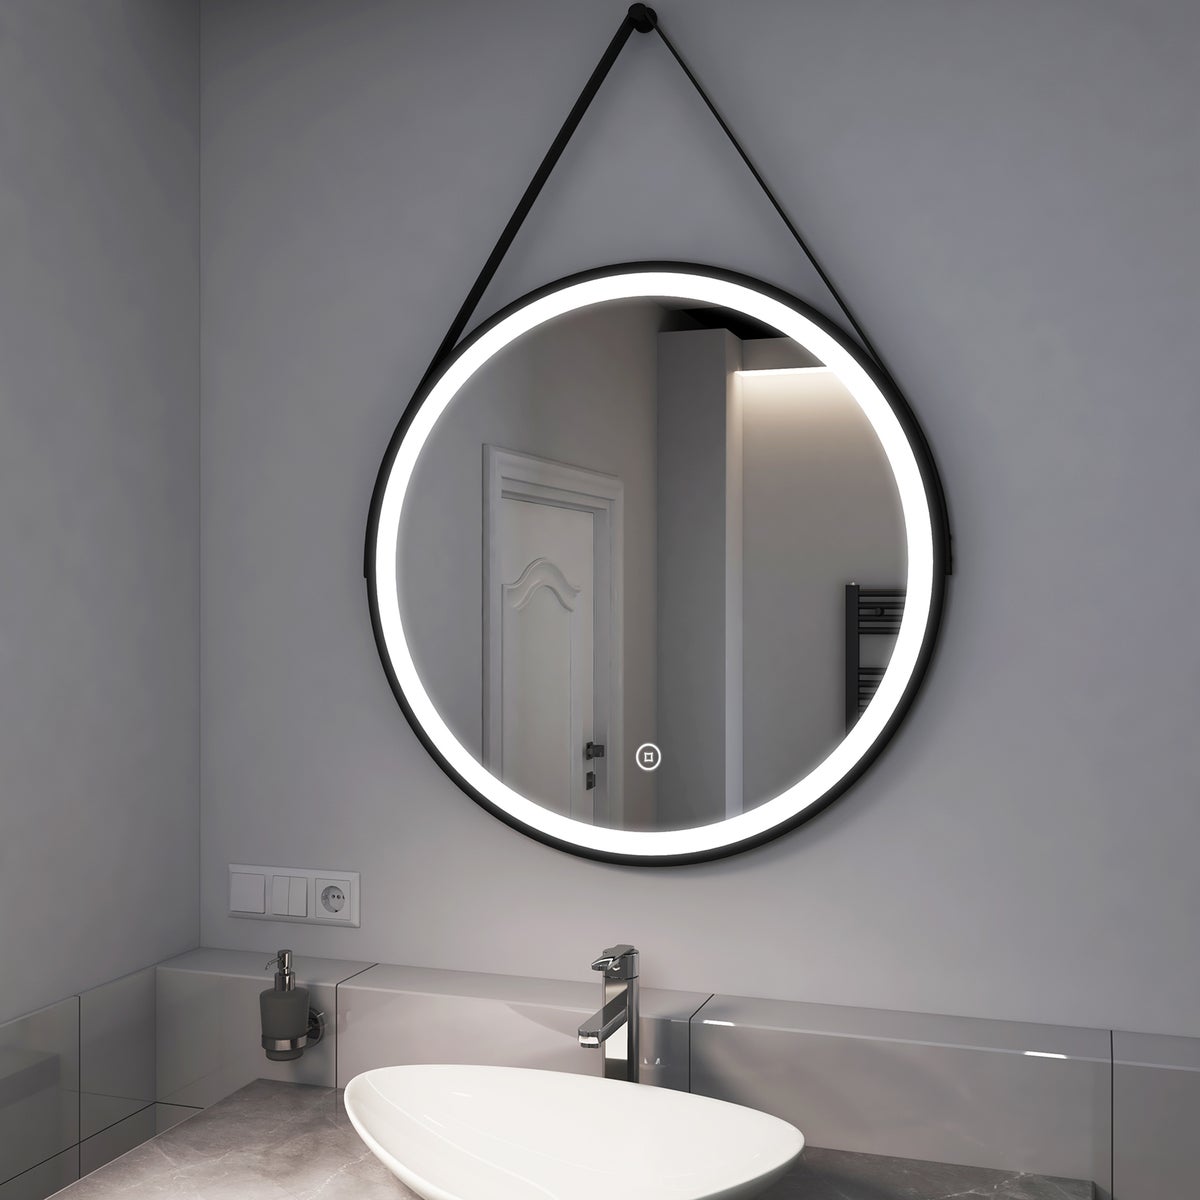 EMKE Badspiegel mit Beleuchtung Schwarz Rahmen und Riemen ф80cm, Kaltweißes Licht,Dimmbar